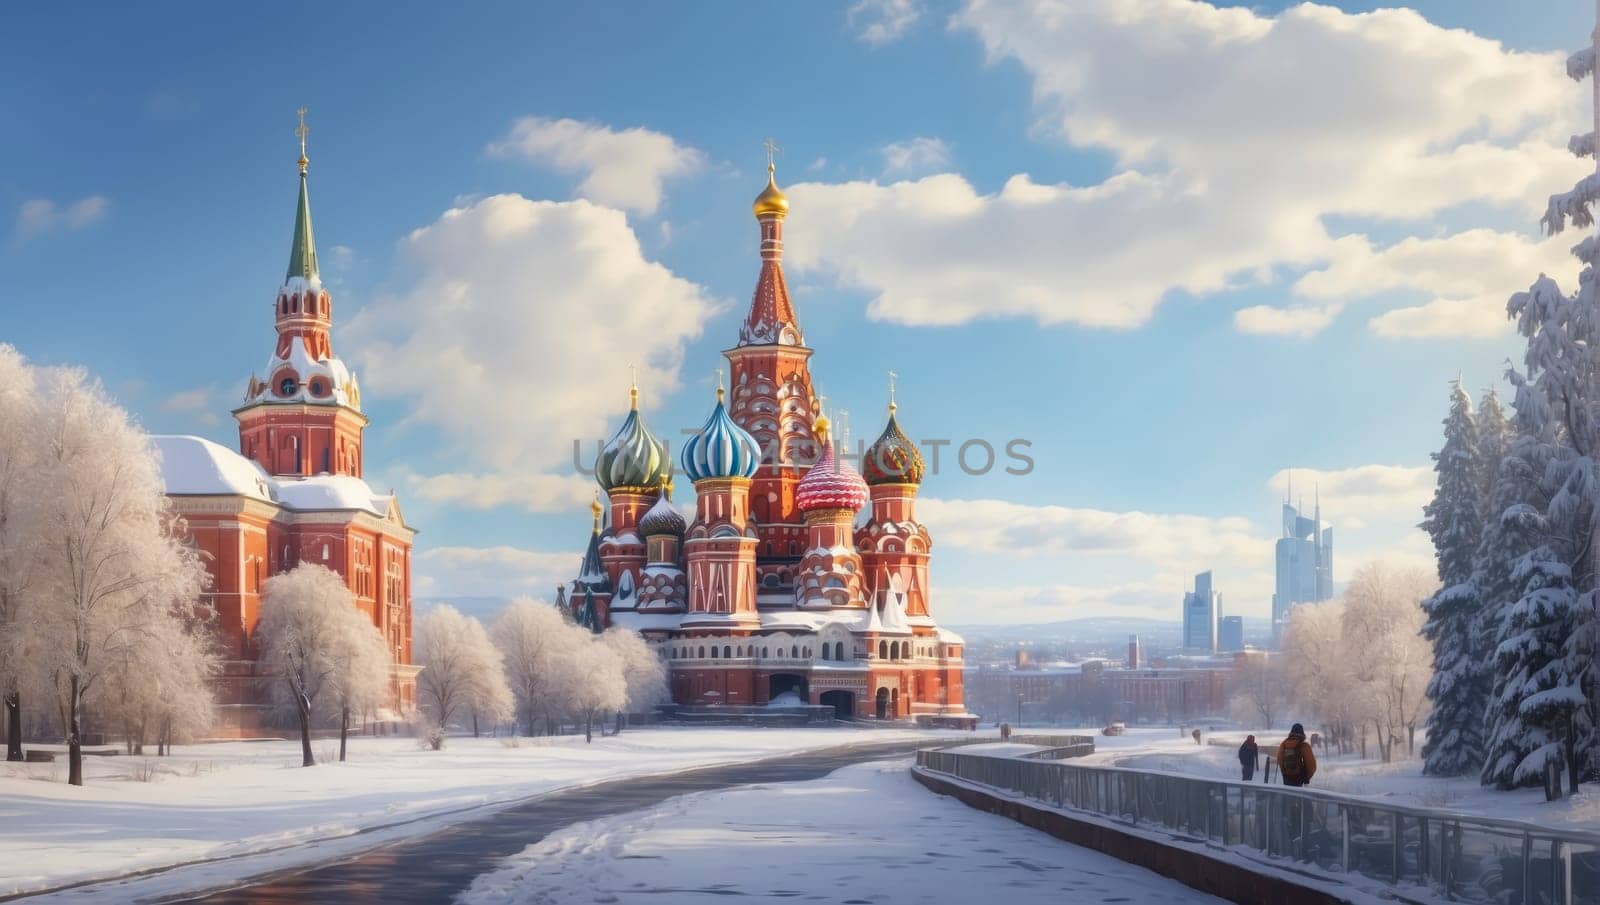 Nikolskaya Tower and Kremlin Senate in Moscow Kremlin, Russia. Winter scene of Moscow Kremlin. by bizzyb0y